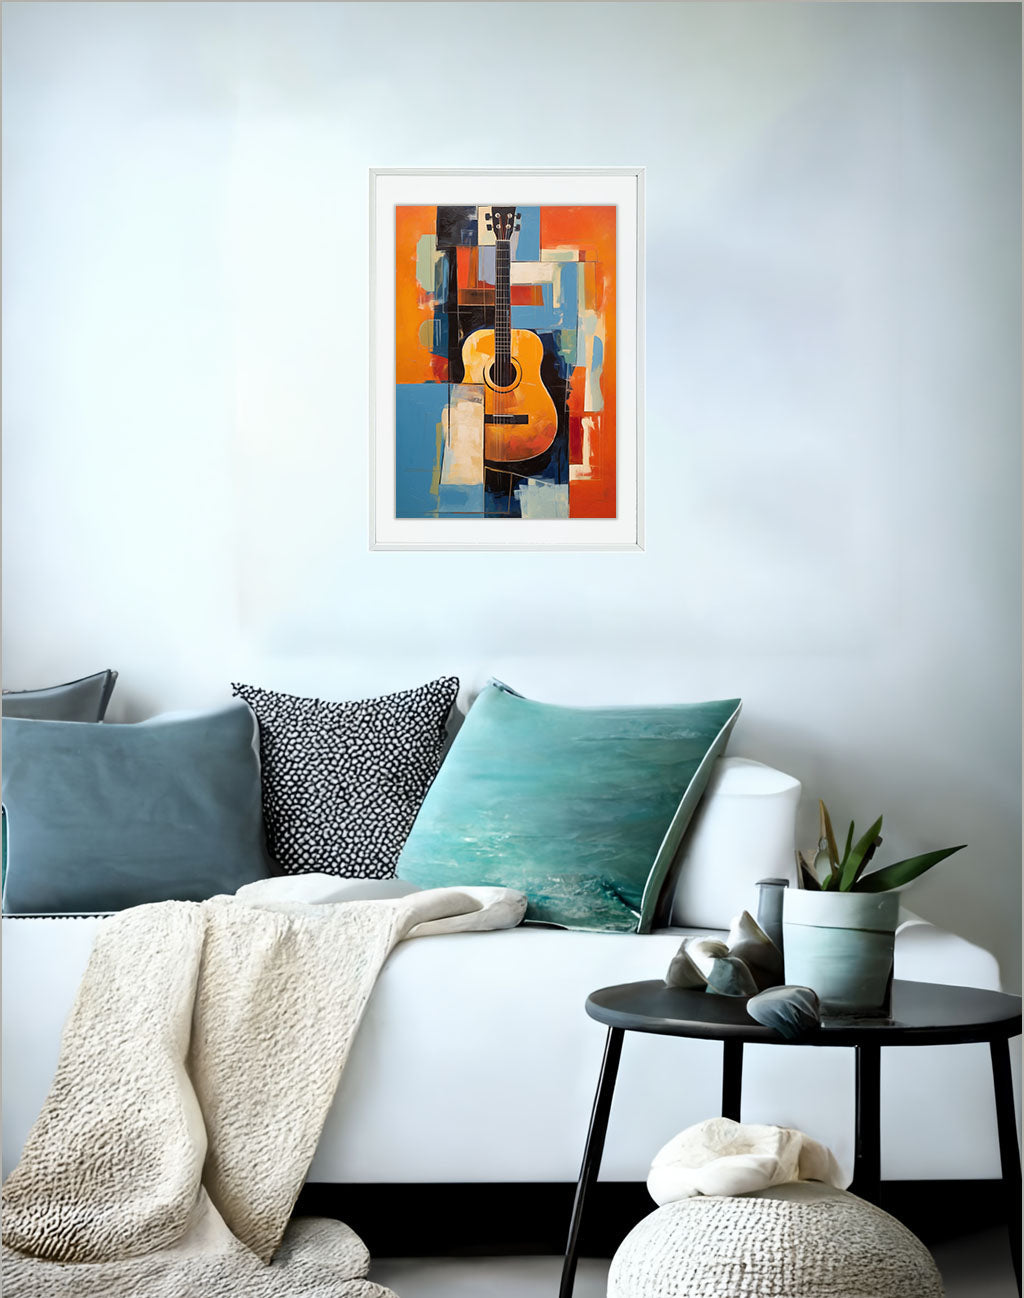 ギターのアートポスター:guitar_d6e7 / 音楽・芸術__のポスター画像ソファ近くに設置したイメージ